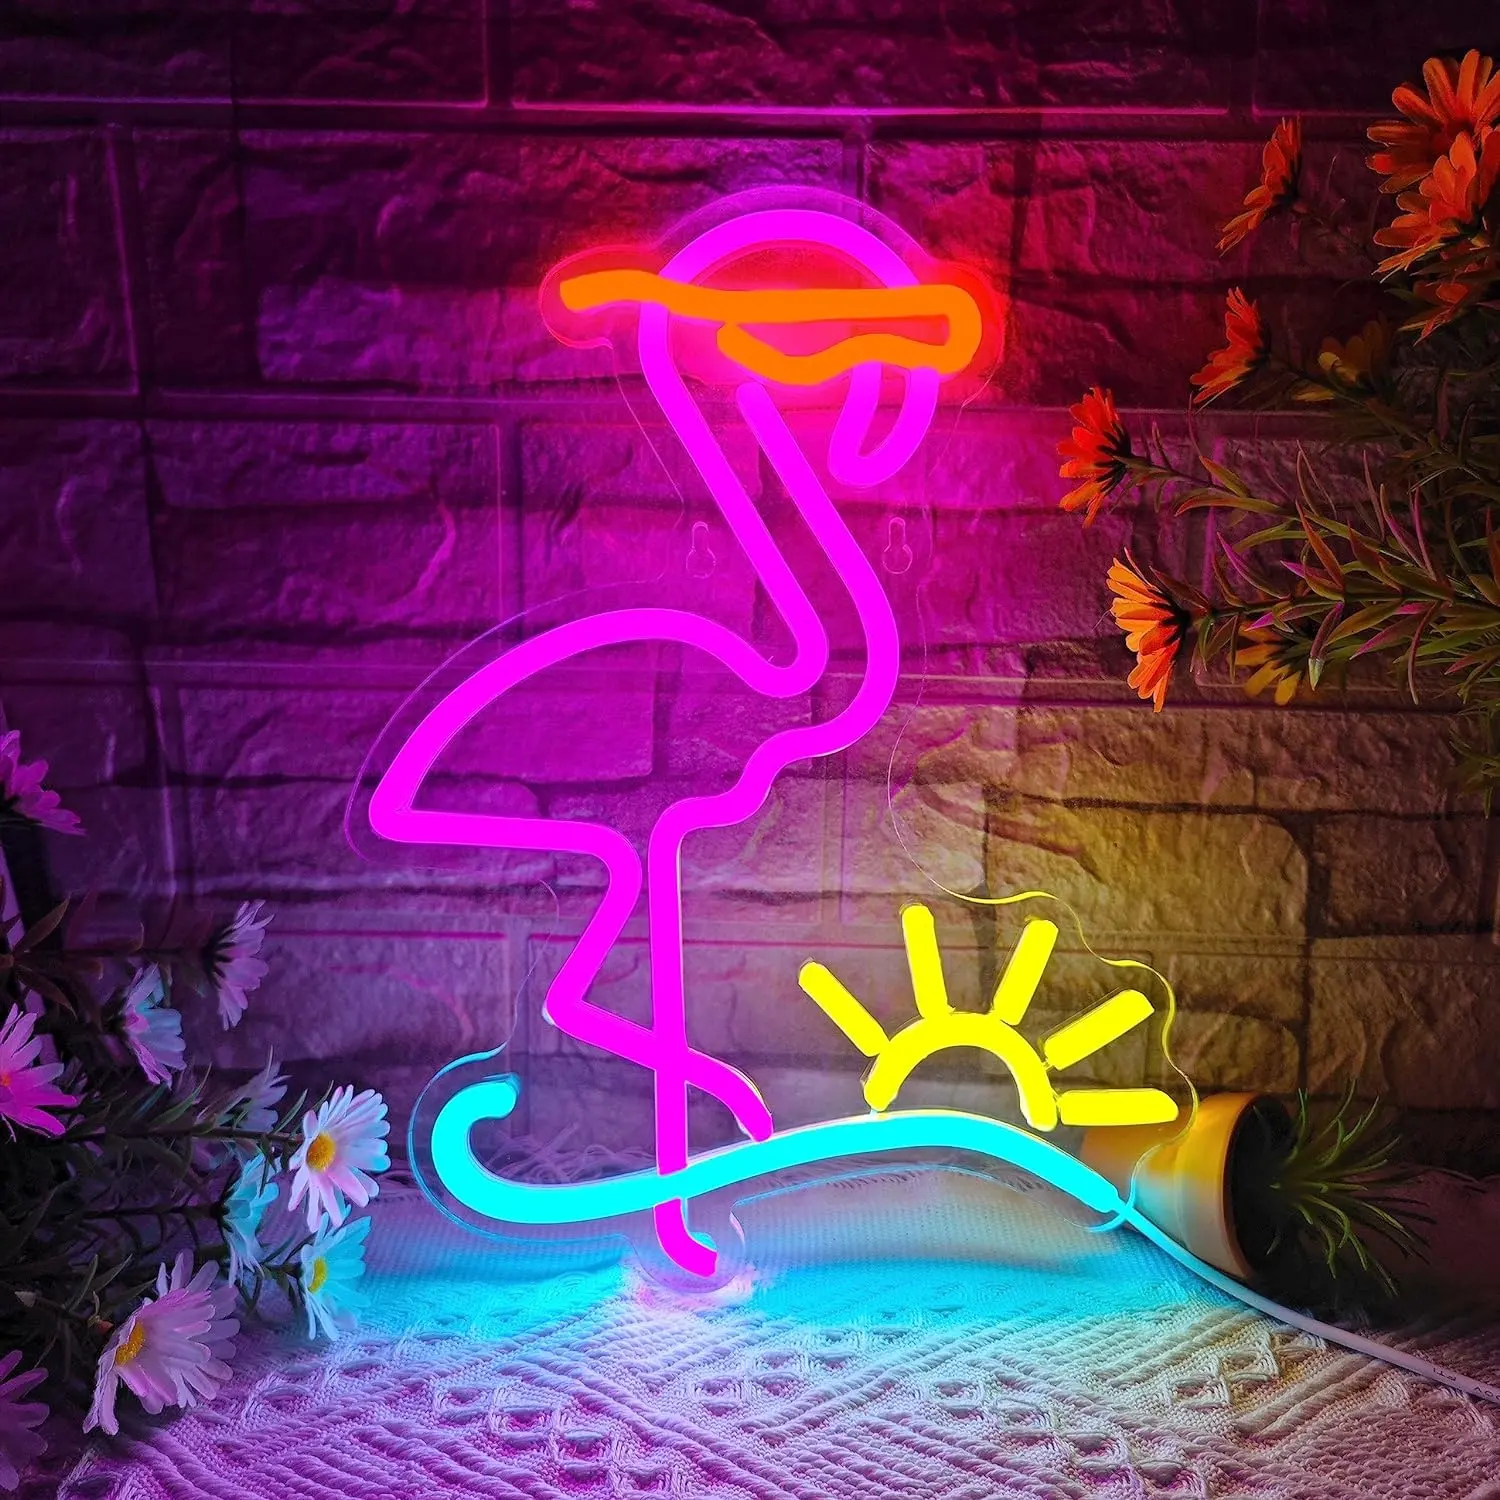 Flamingo tanda Neon gelombang matahari tanda Neon untuk dekorasi dinding bertenaga USB dengan Flamingo dan lampu Neon gelombang matahari